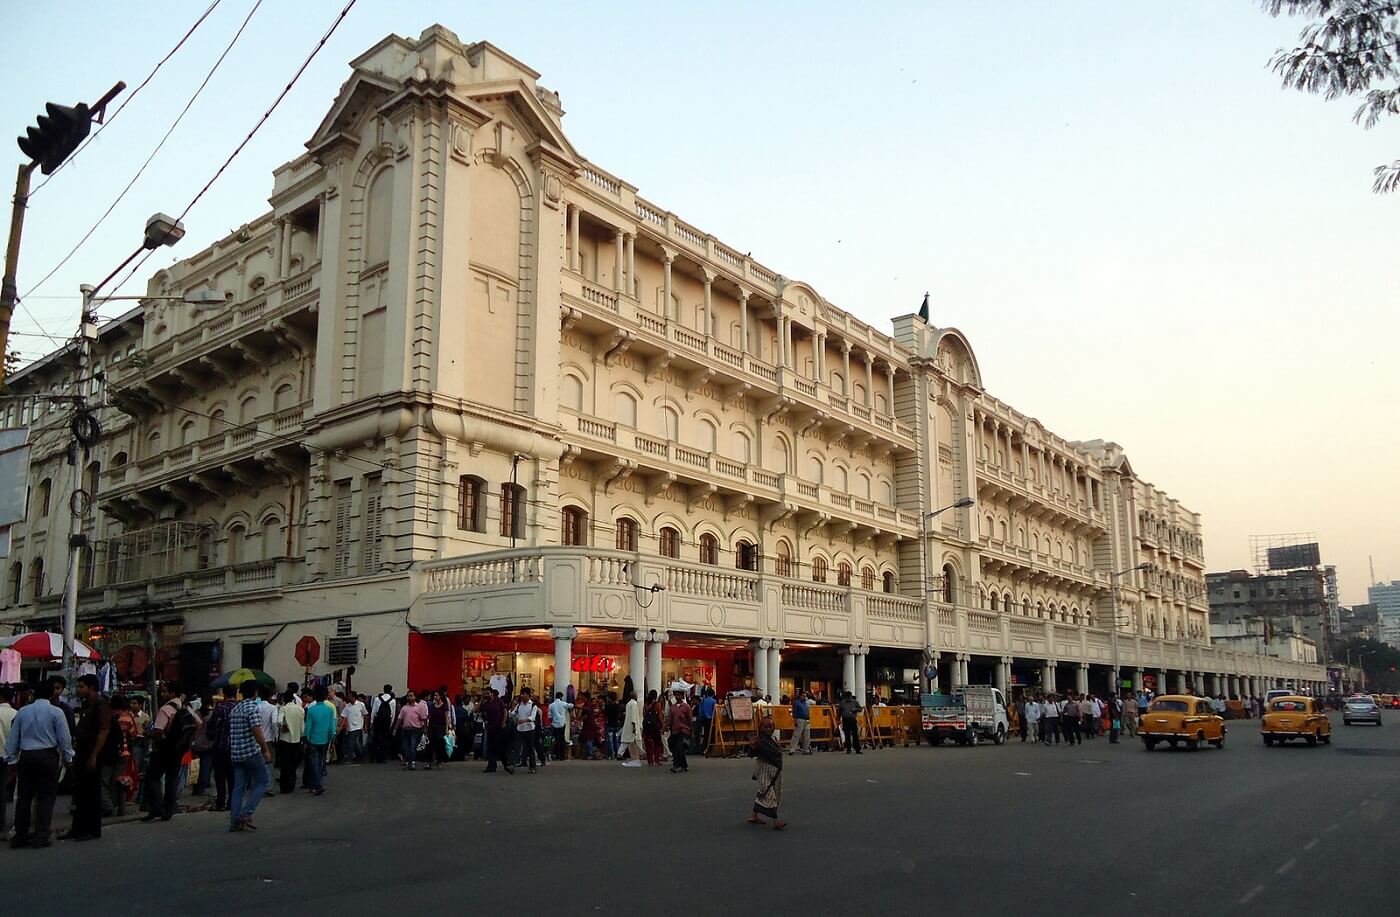 The Oberoi Grand, Kolkata